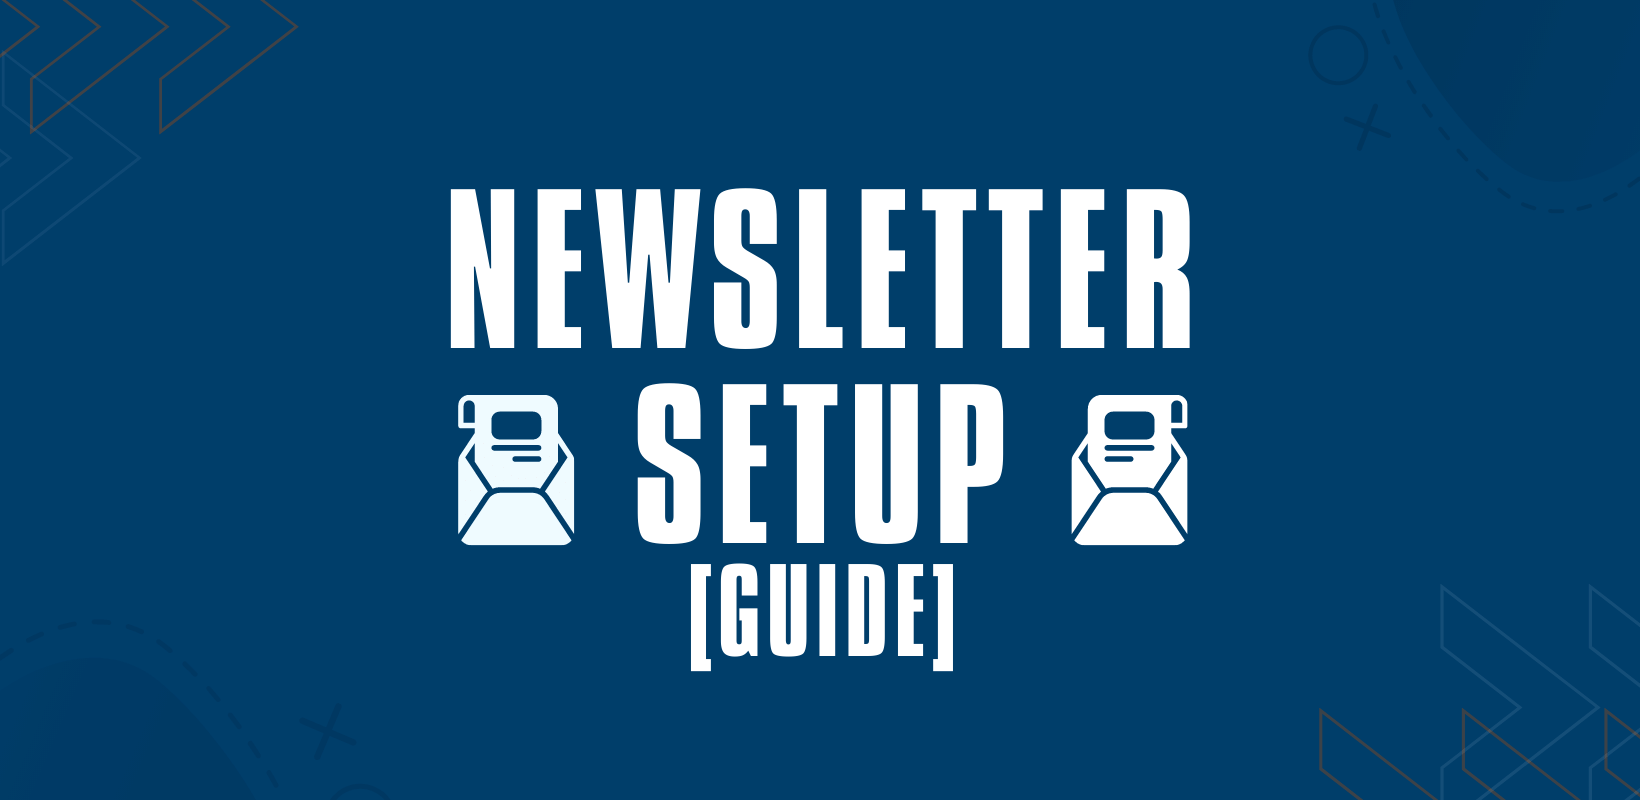 newsletter setup guide